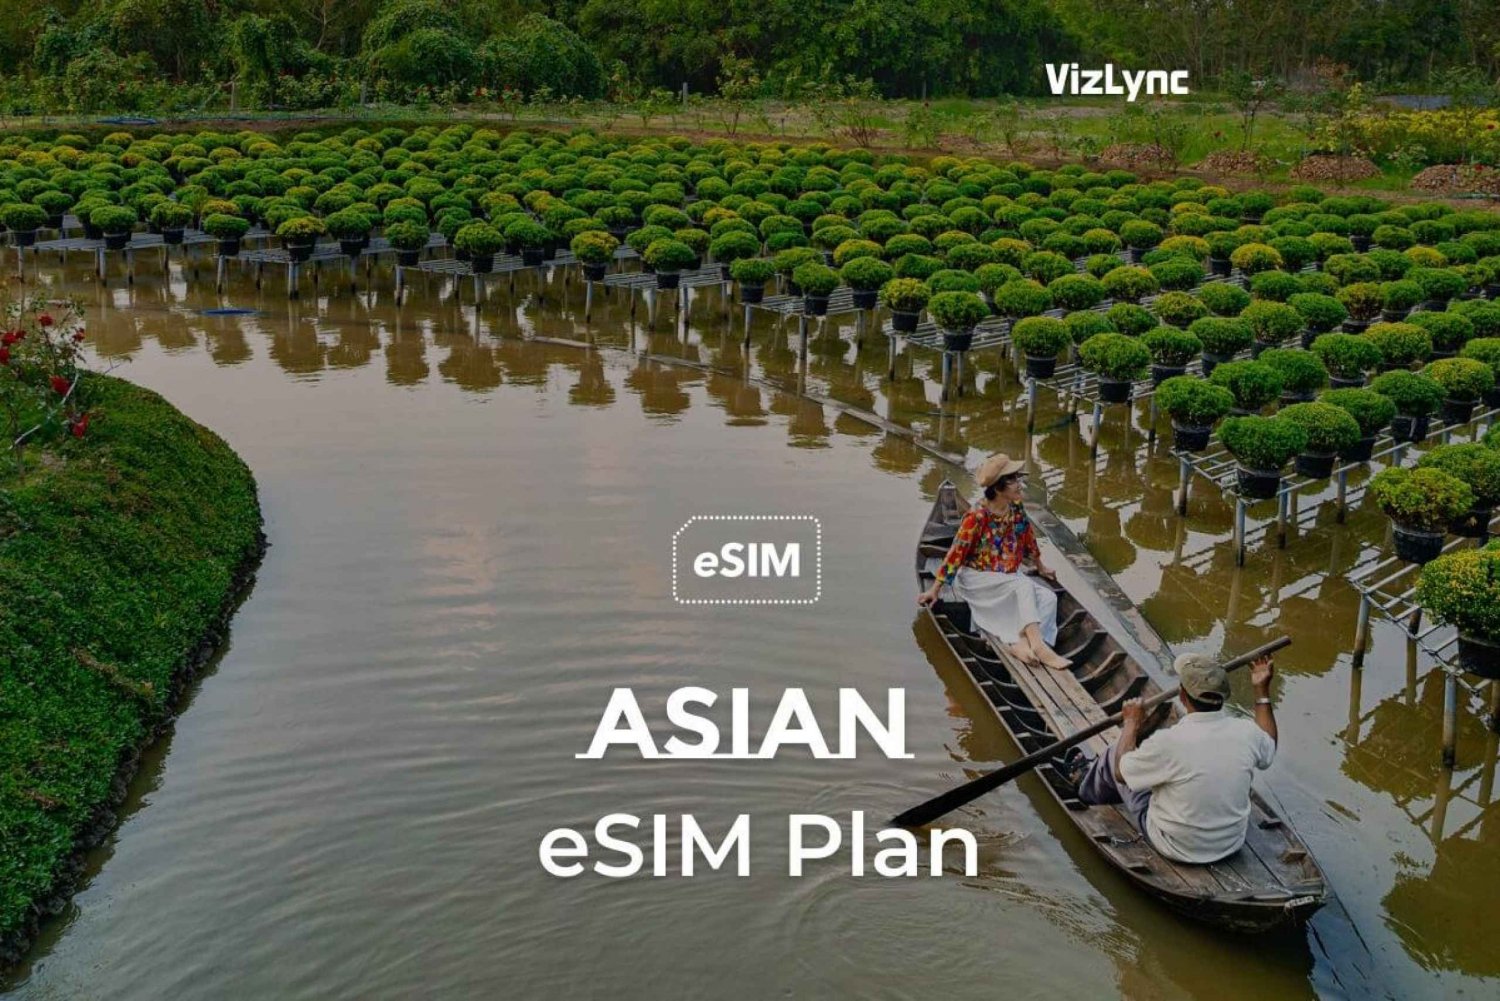 Piano eSIM Asia Travel per 8 giorni con 6 GB di dati ad alta velocità